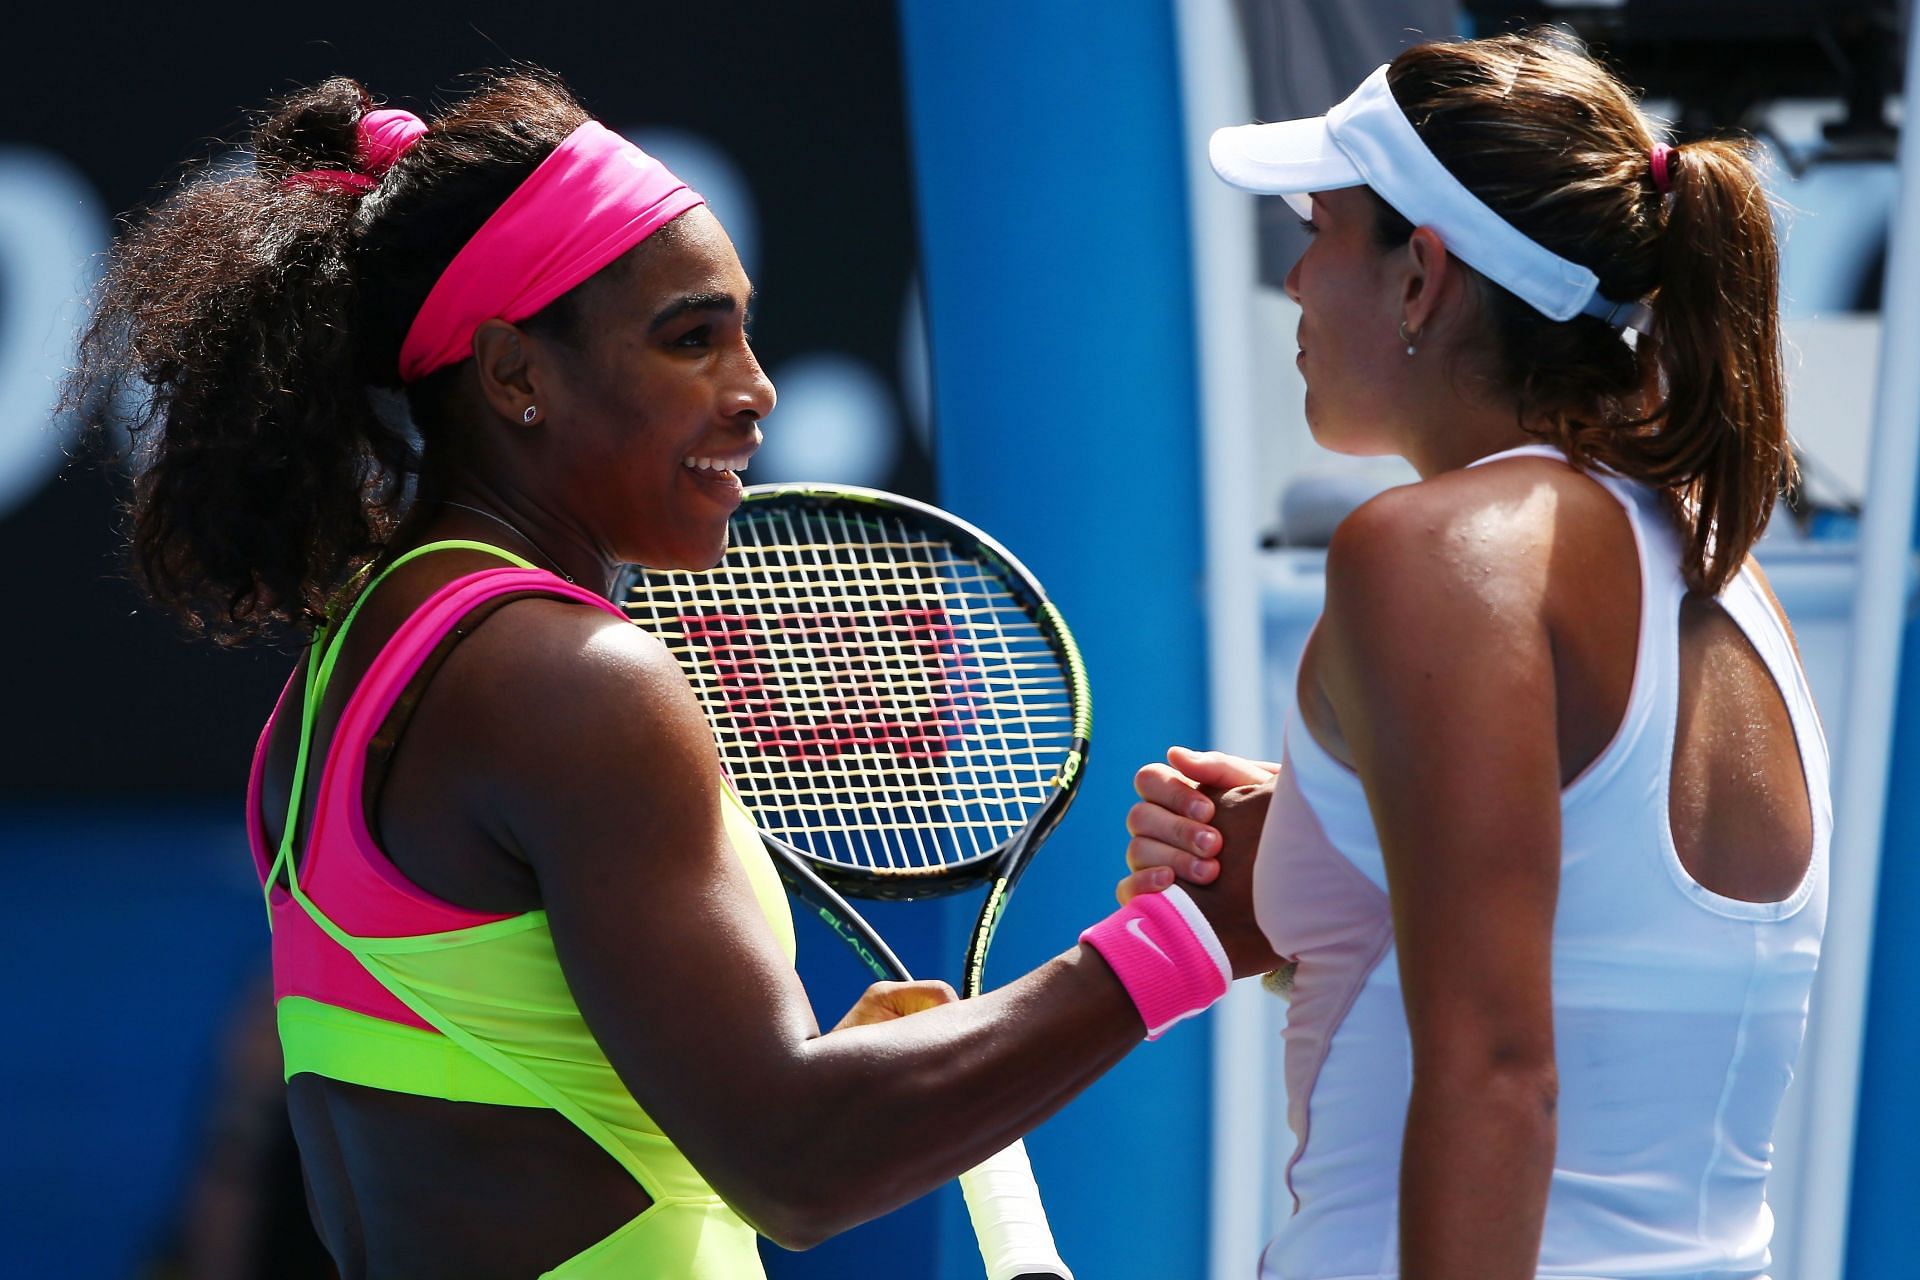 Serena Williams (L) and Garbine Muguruza (R) at the 2015 Australian Open